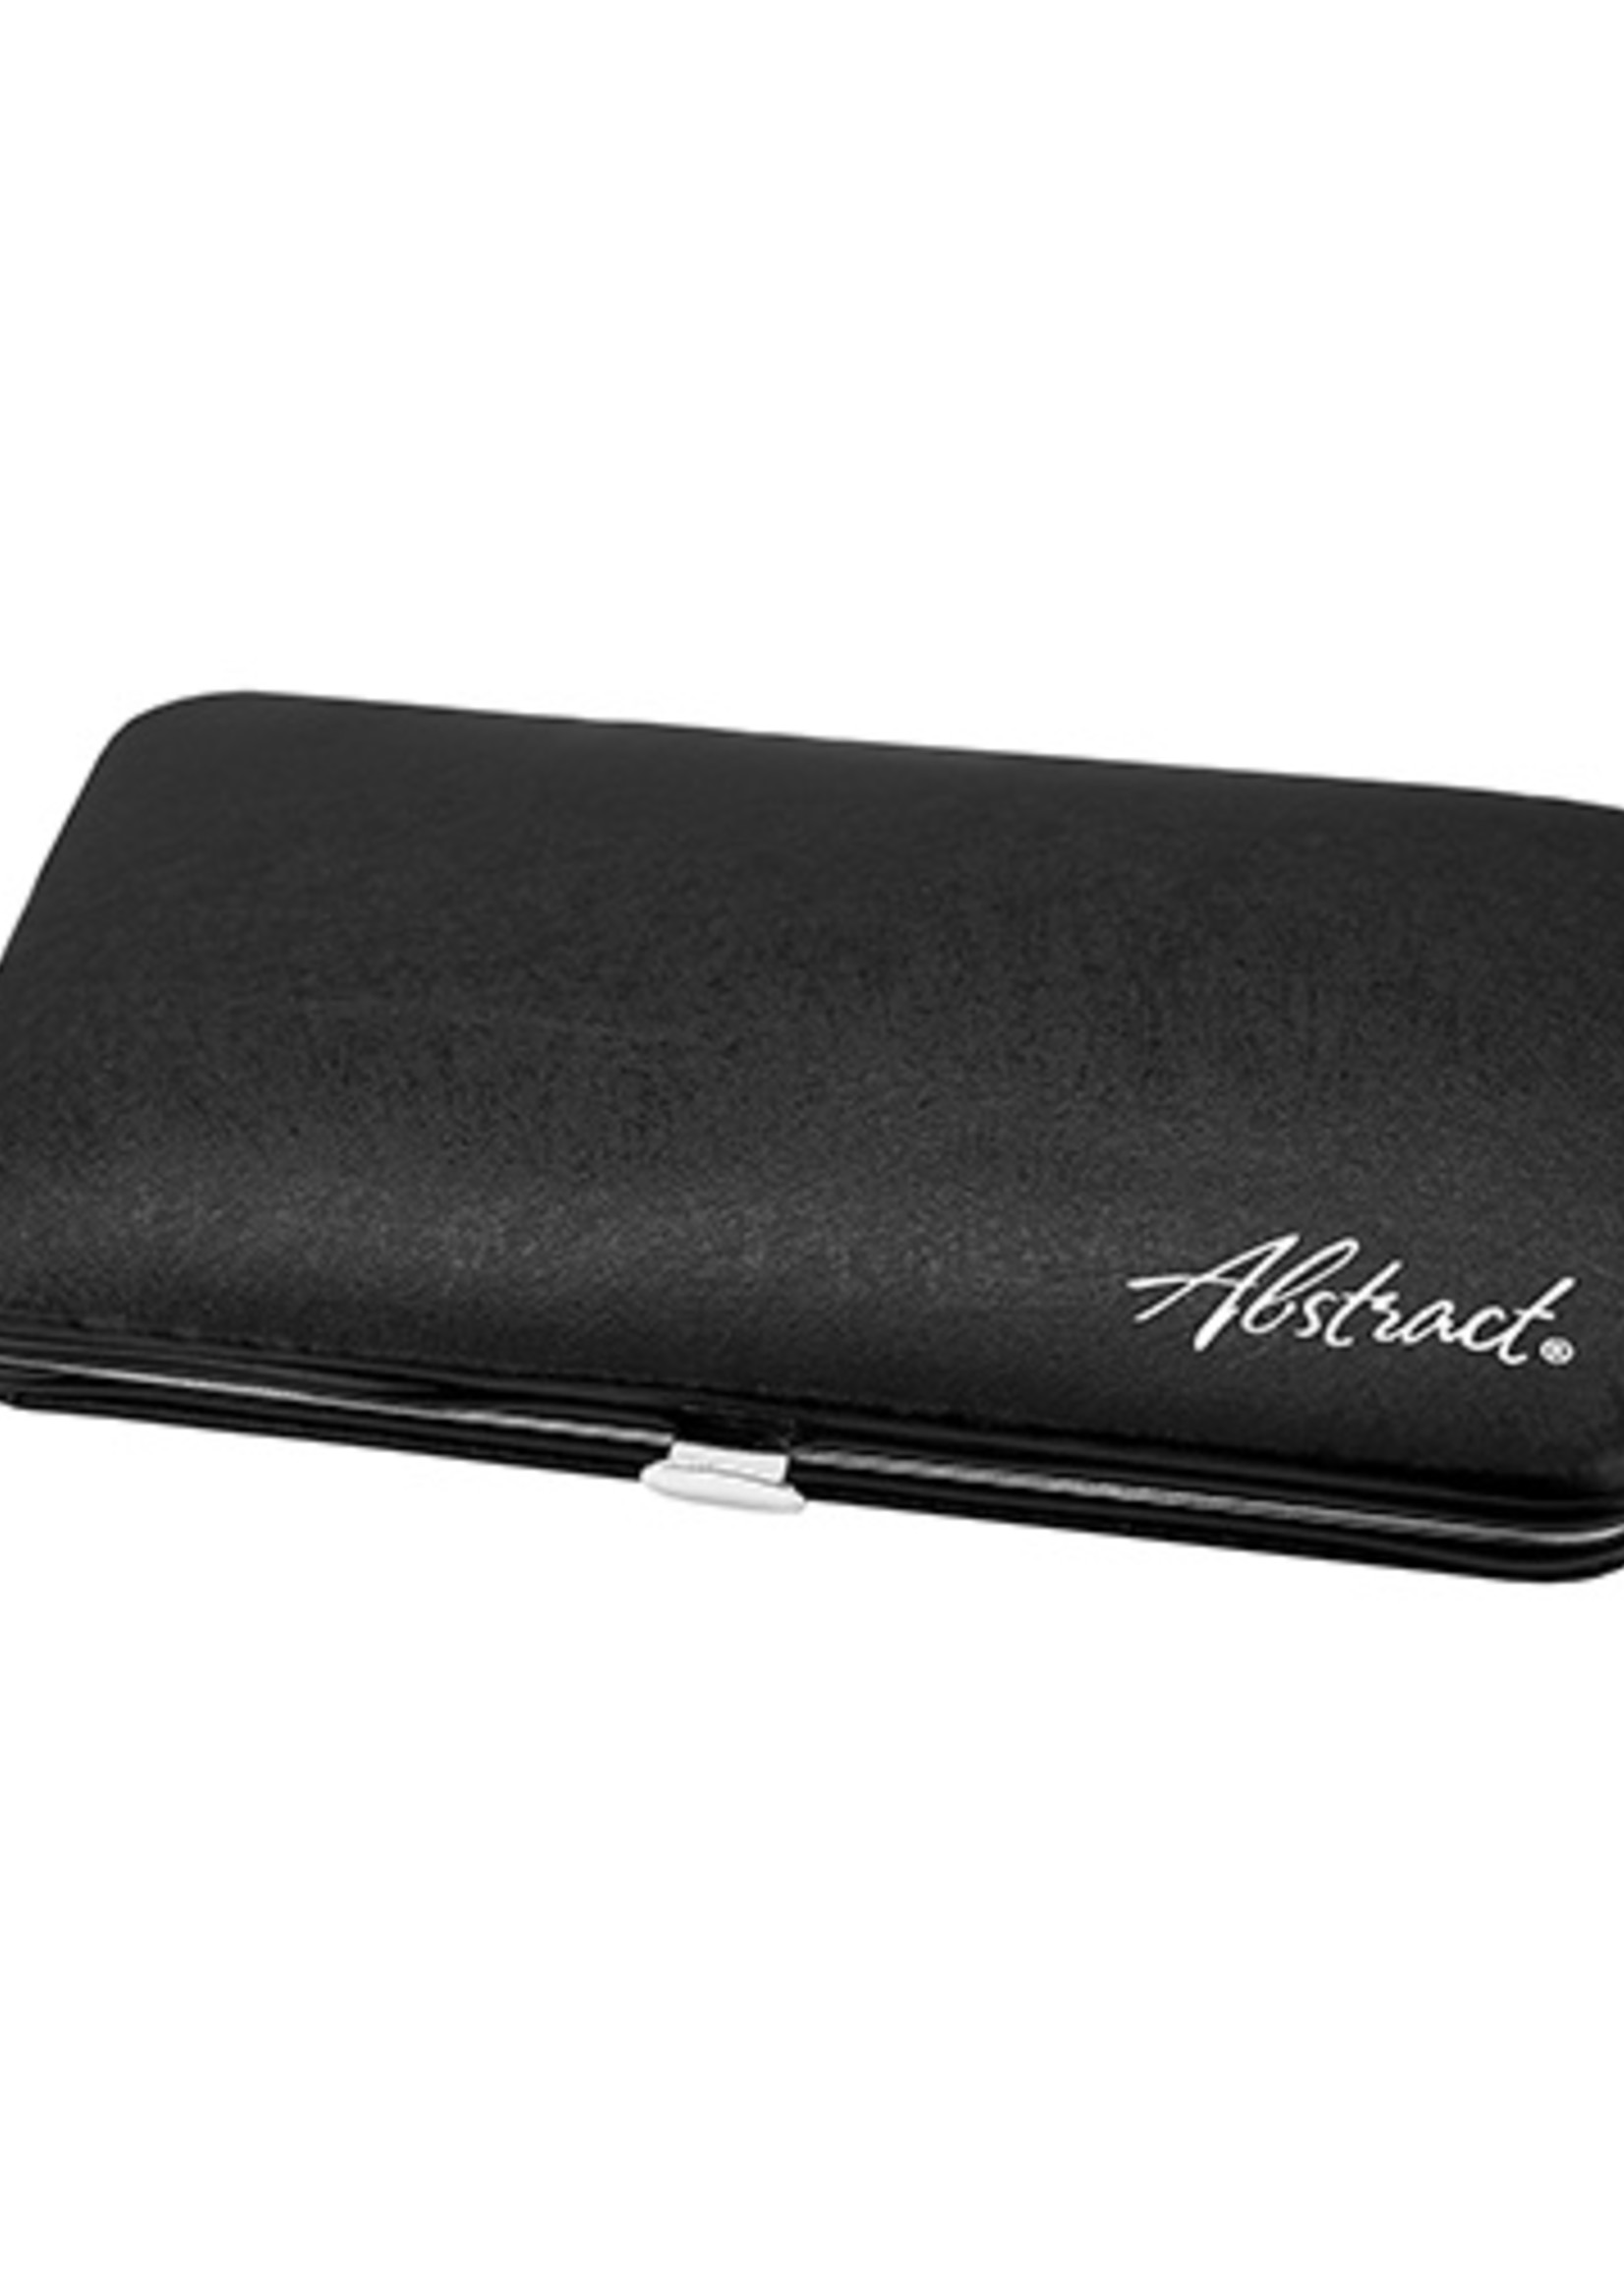 Abstract® Magnetic tweezer case black